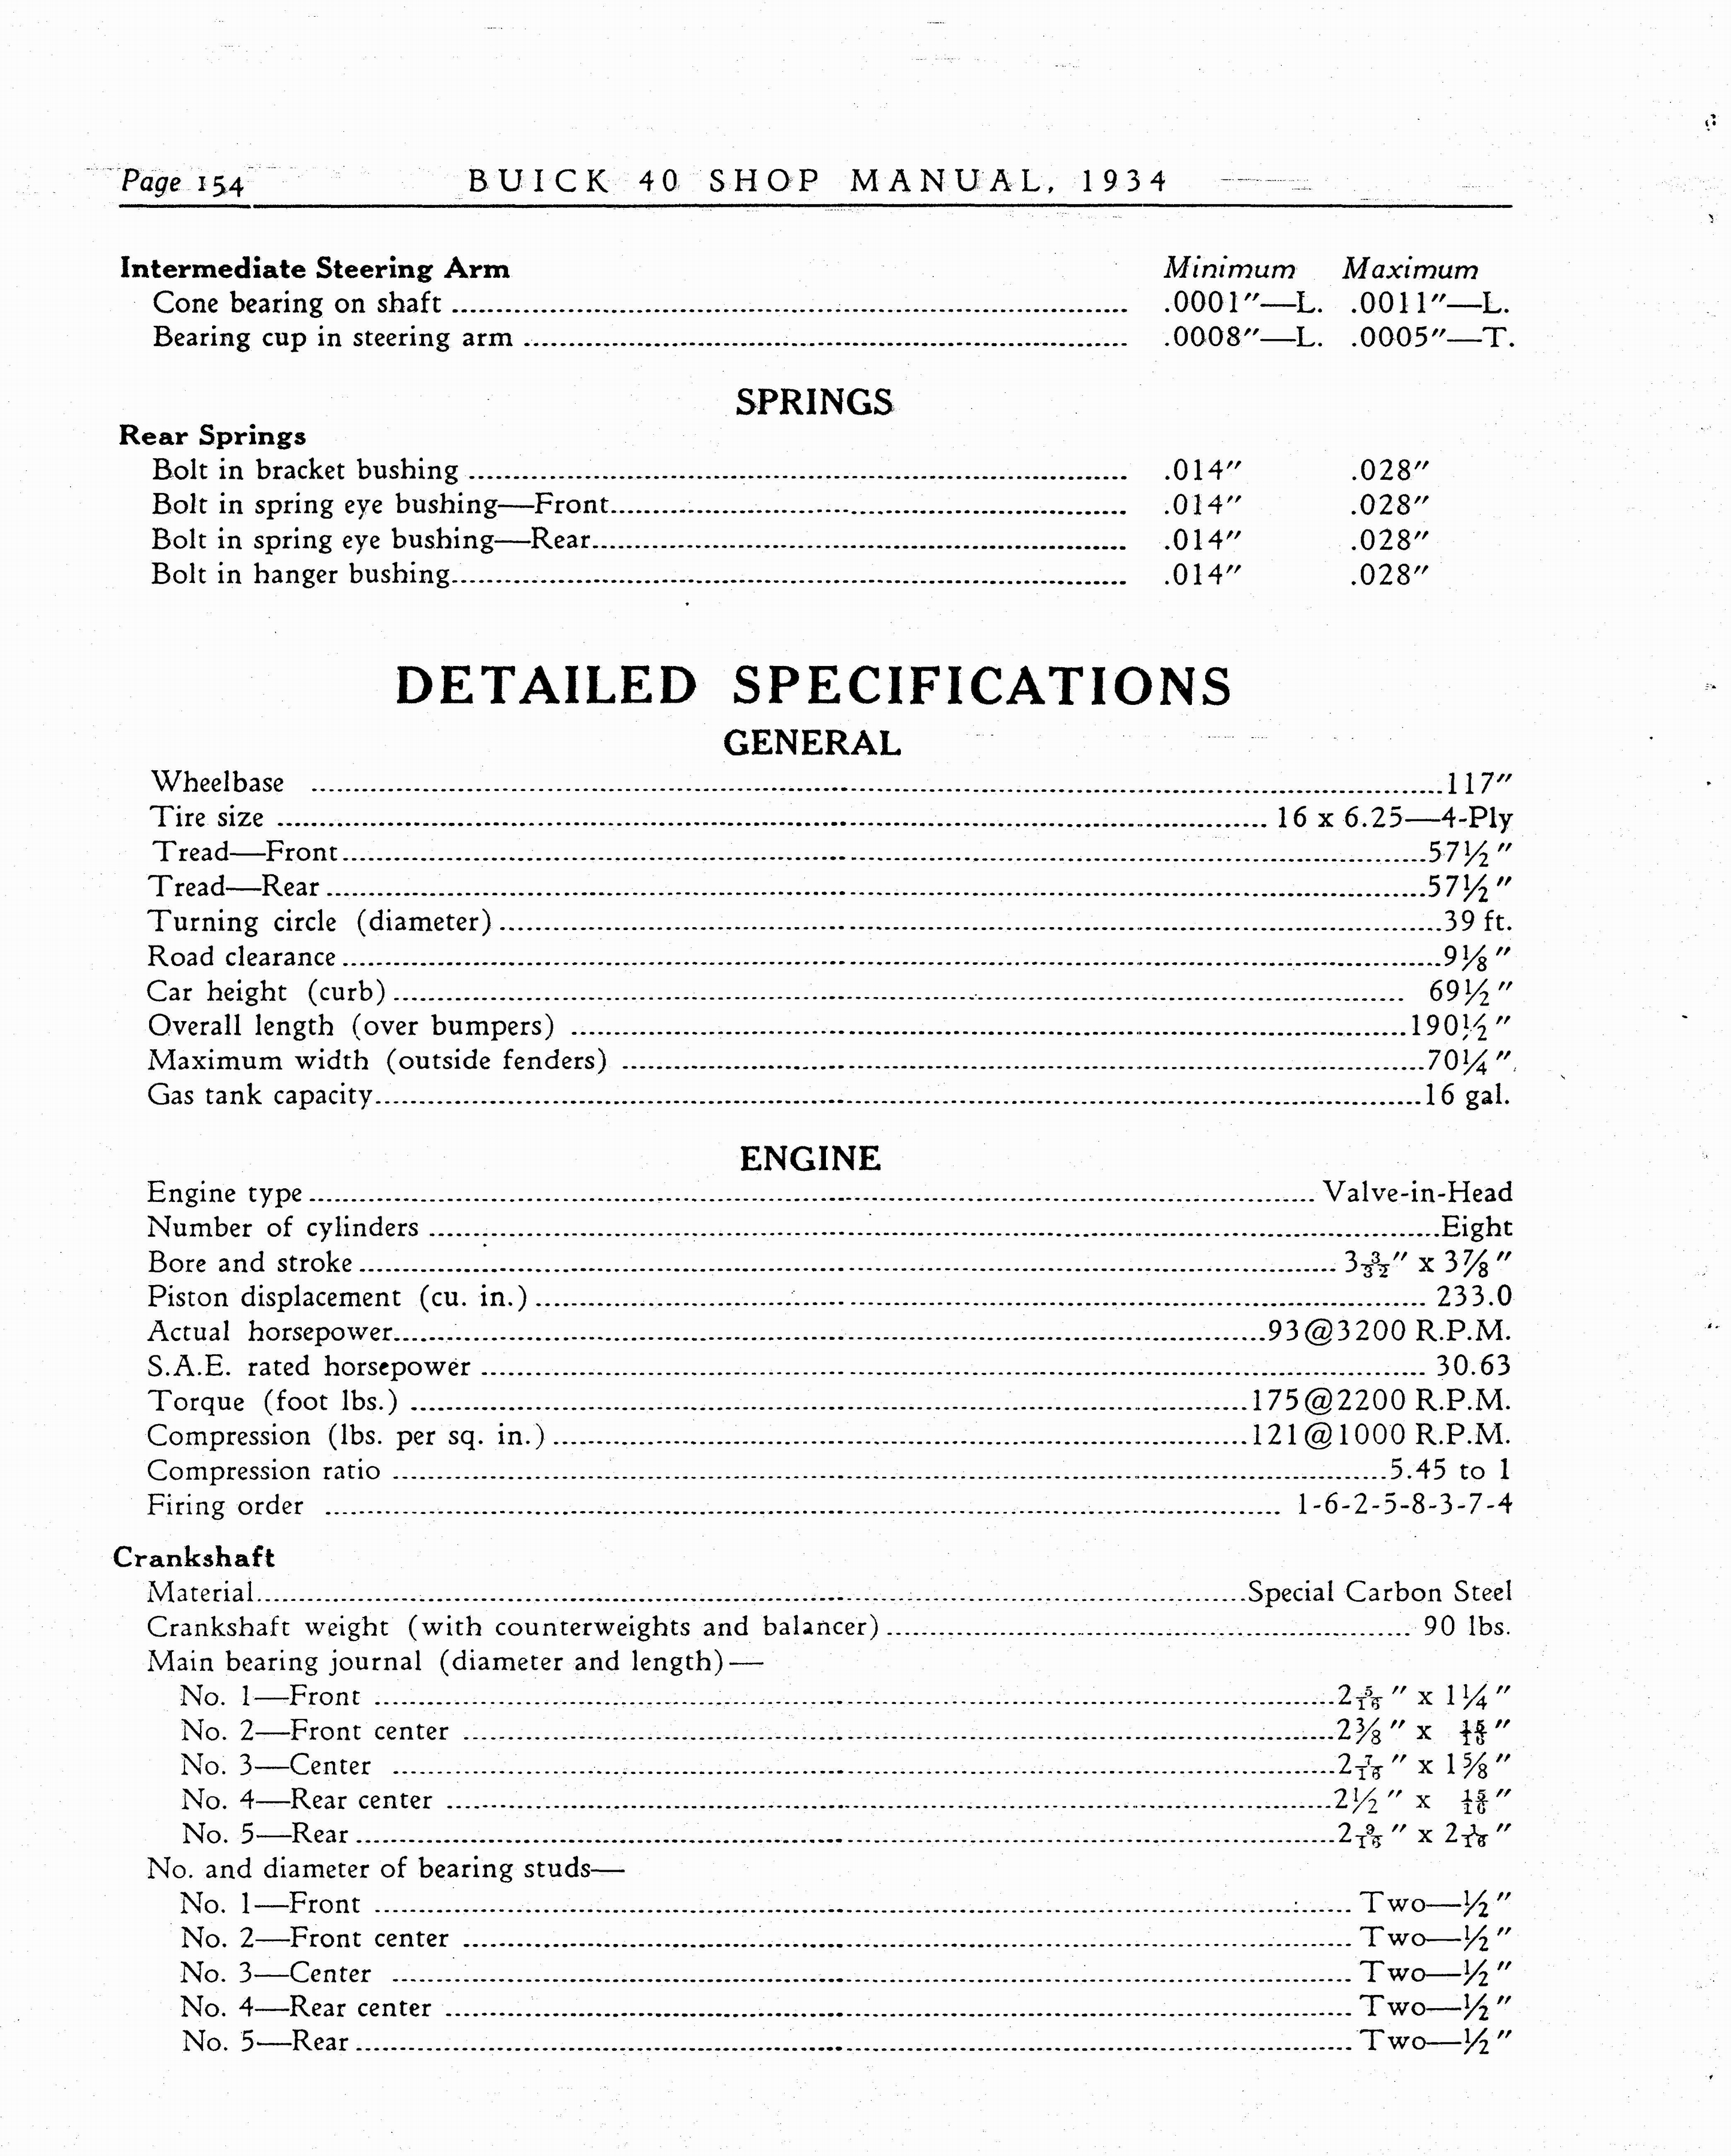 n_1934 Buick Series 40 Shop Manual_Page_155.jpg